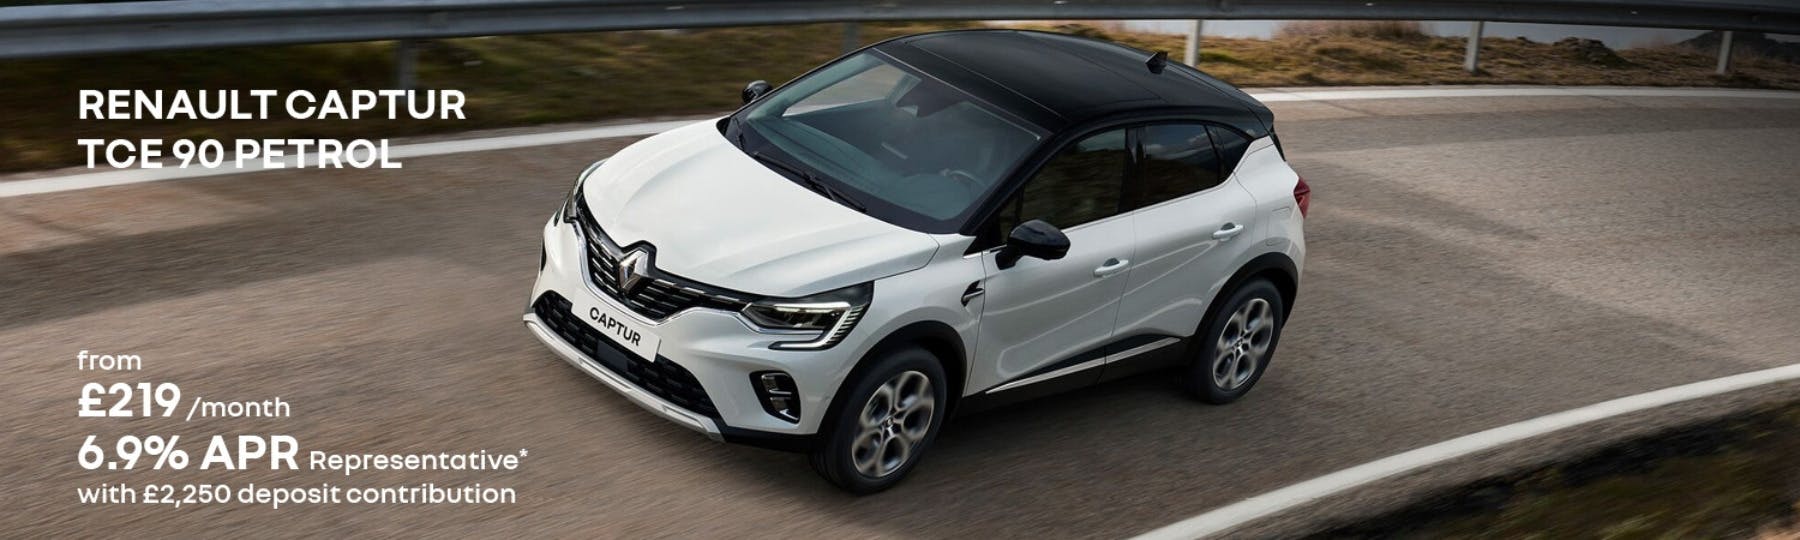 Renault CAPTUR New Car Offer